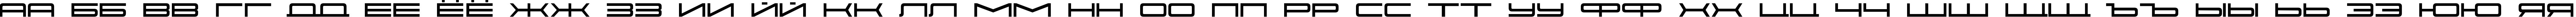 Пример написания русского алфавита шрифтом SK Porsche